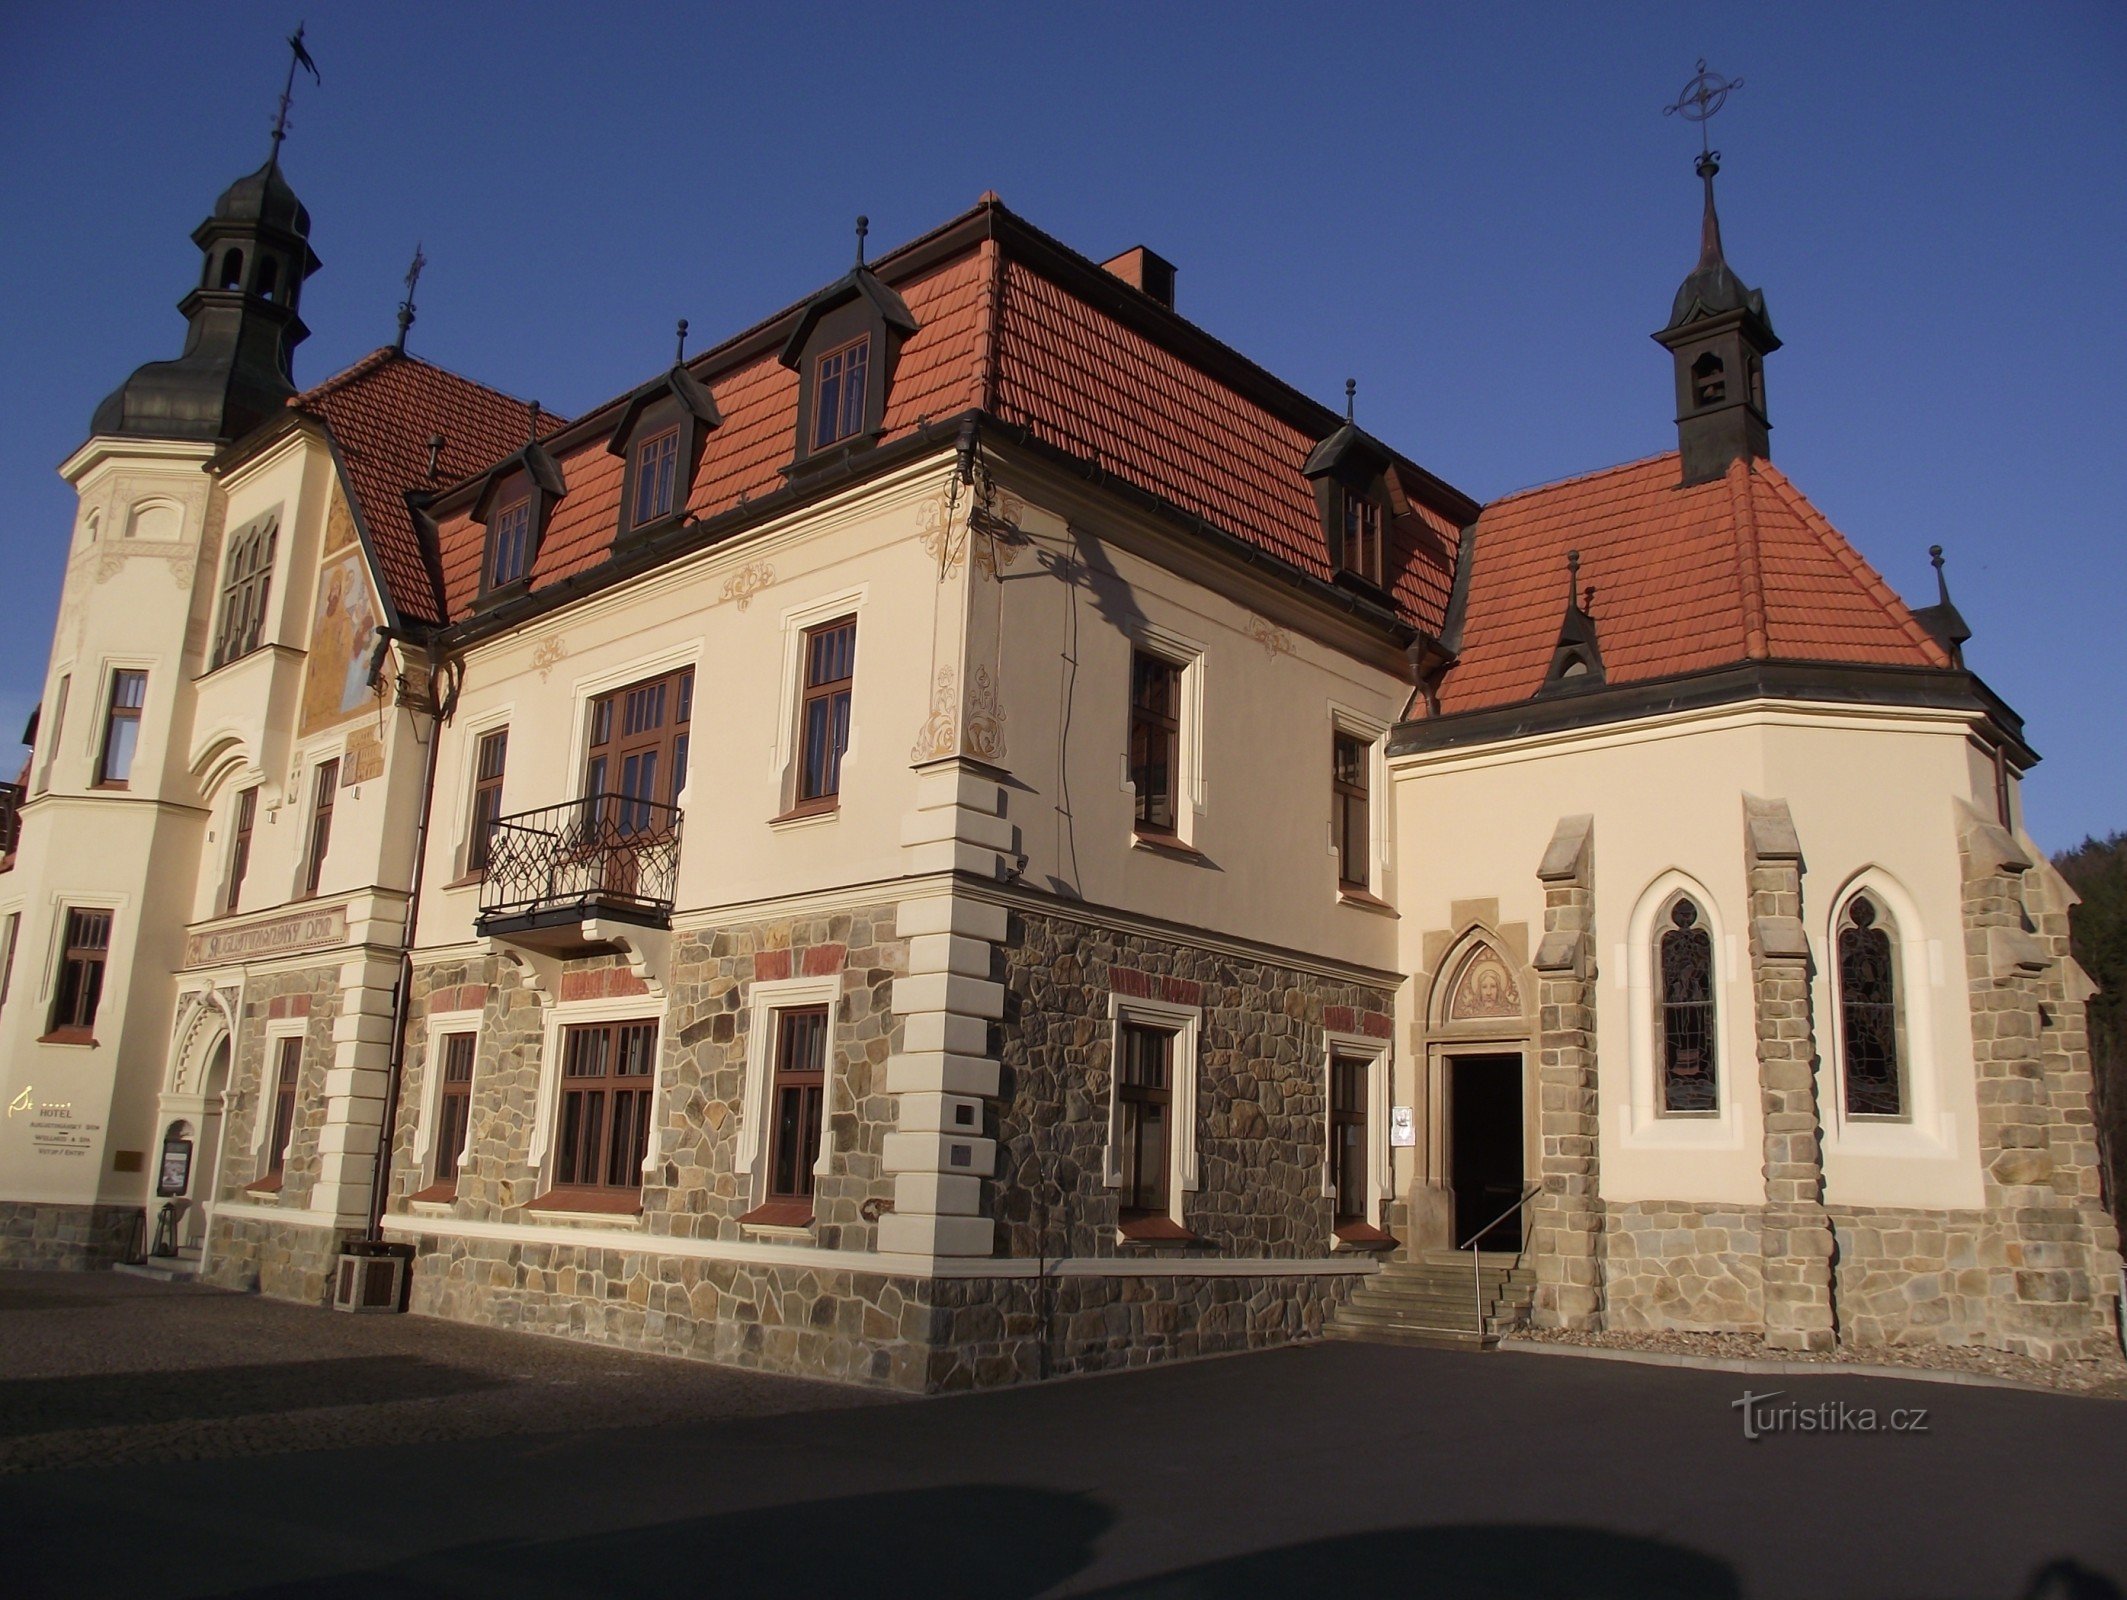 Luhačovice – Augustijns huishotel